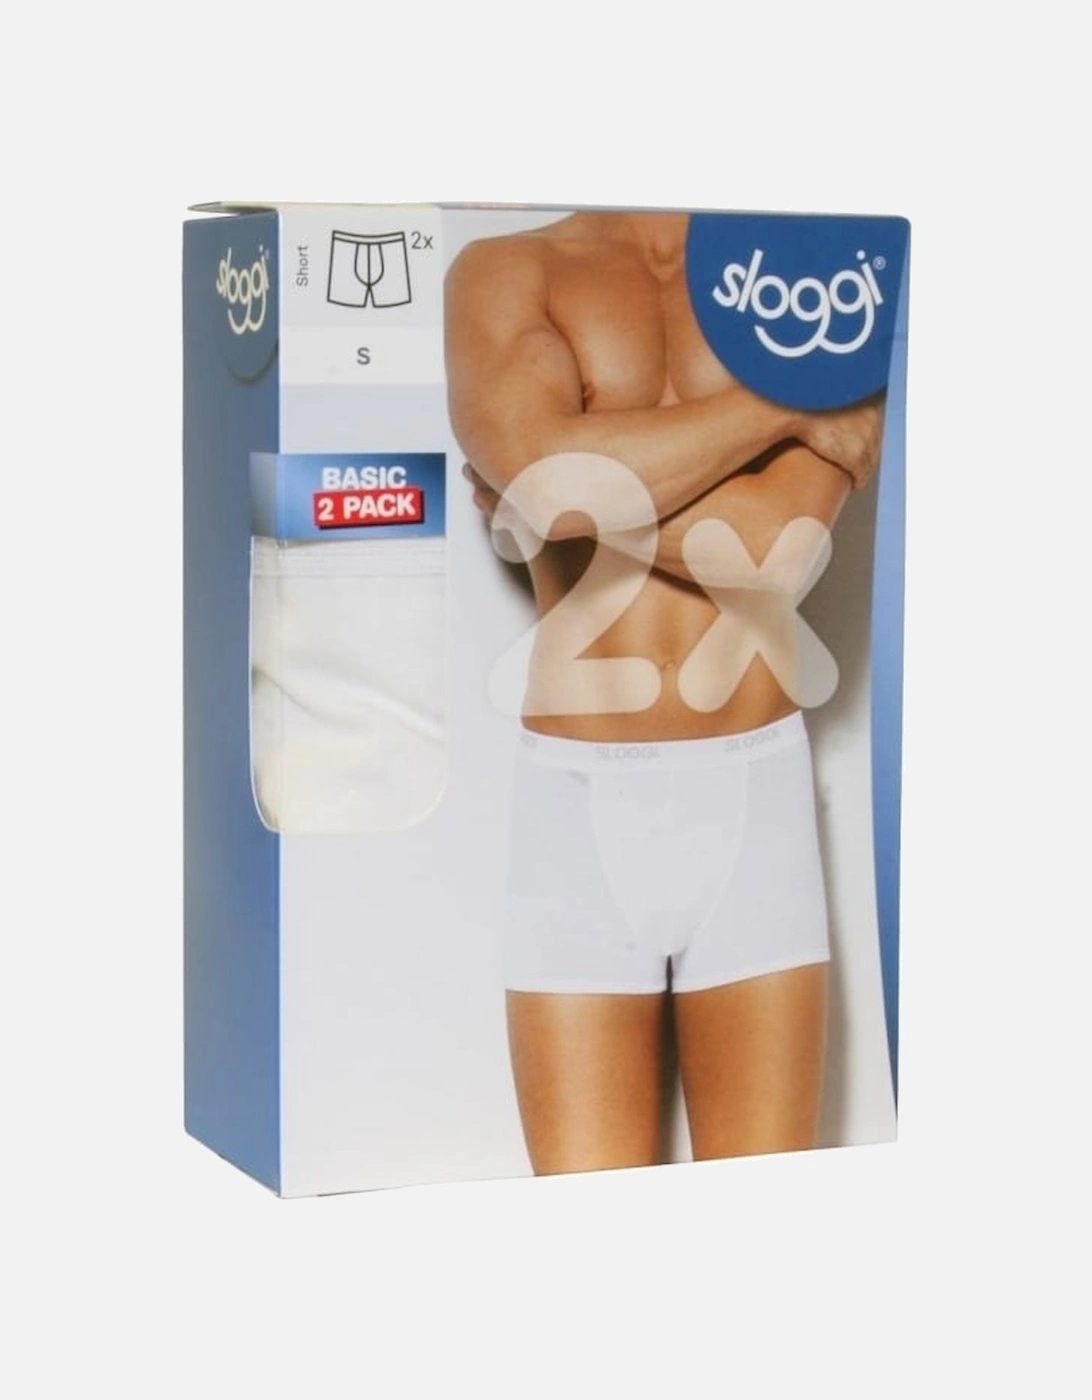 2-Pack Basic Short Boxer Trunks, White